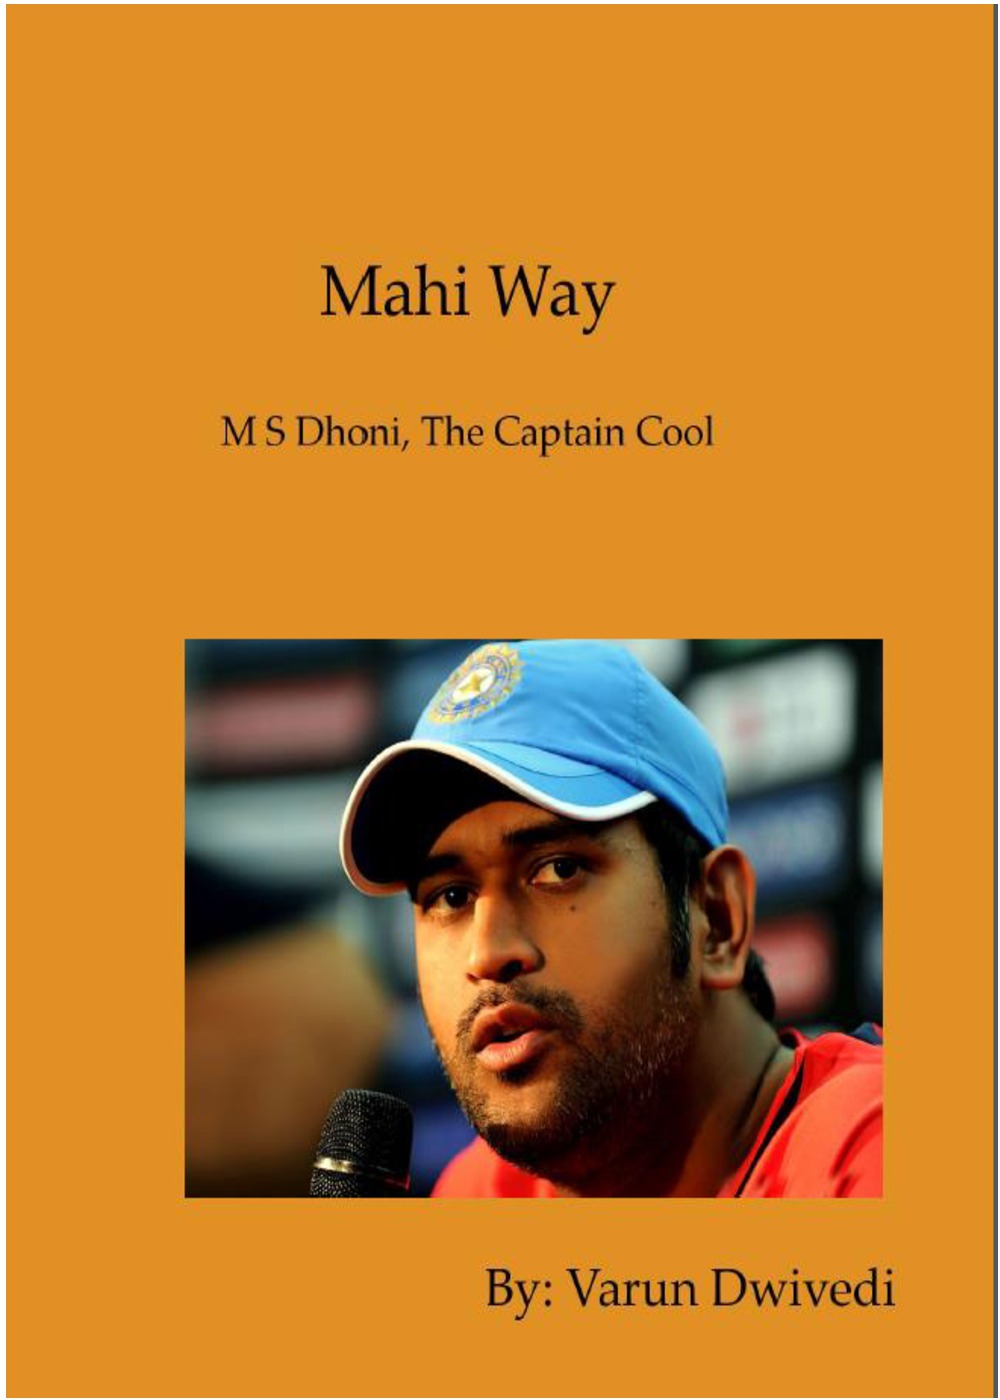 m.s dhoni book pdf download